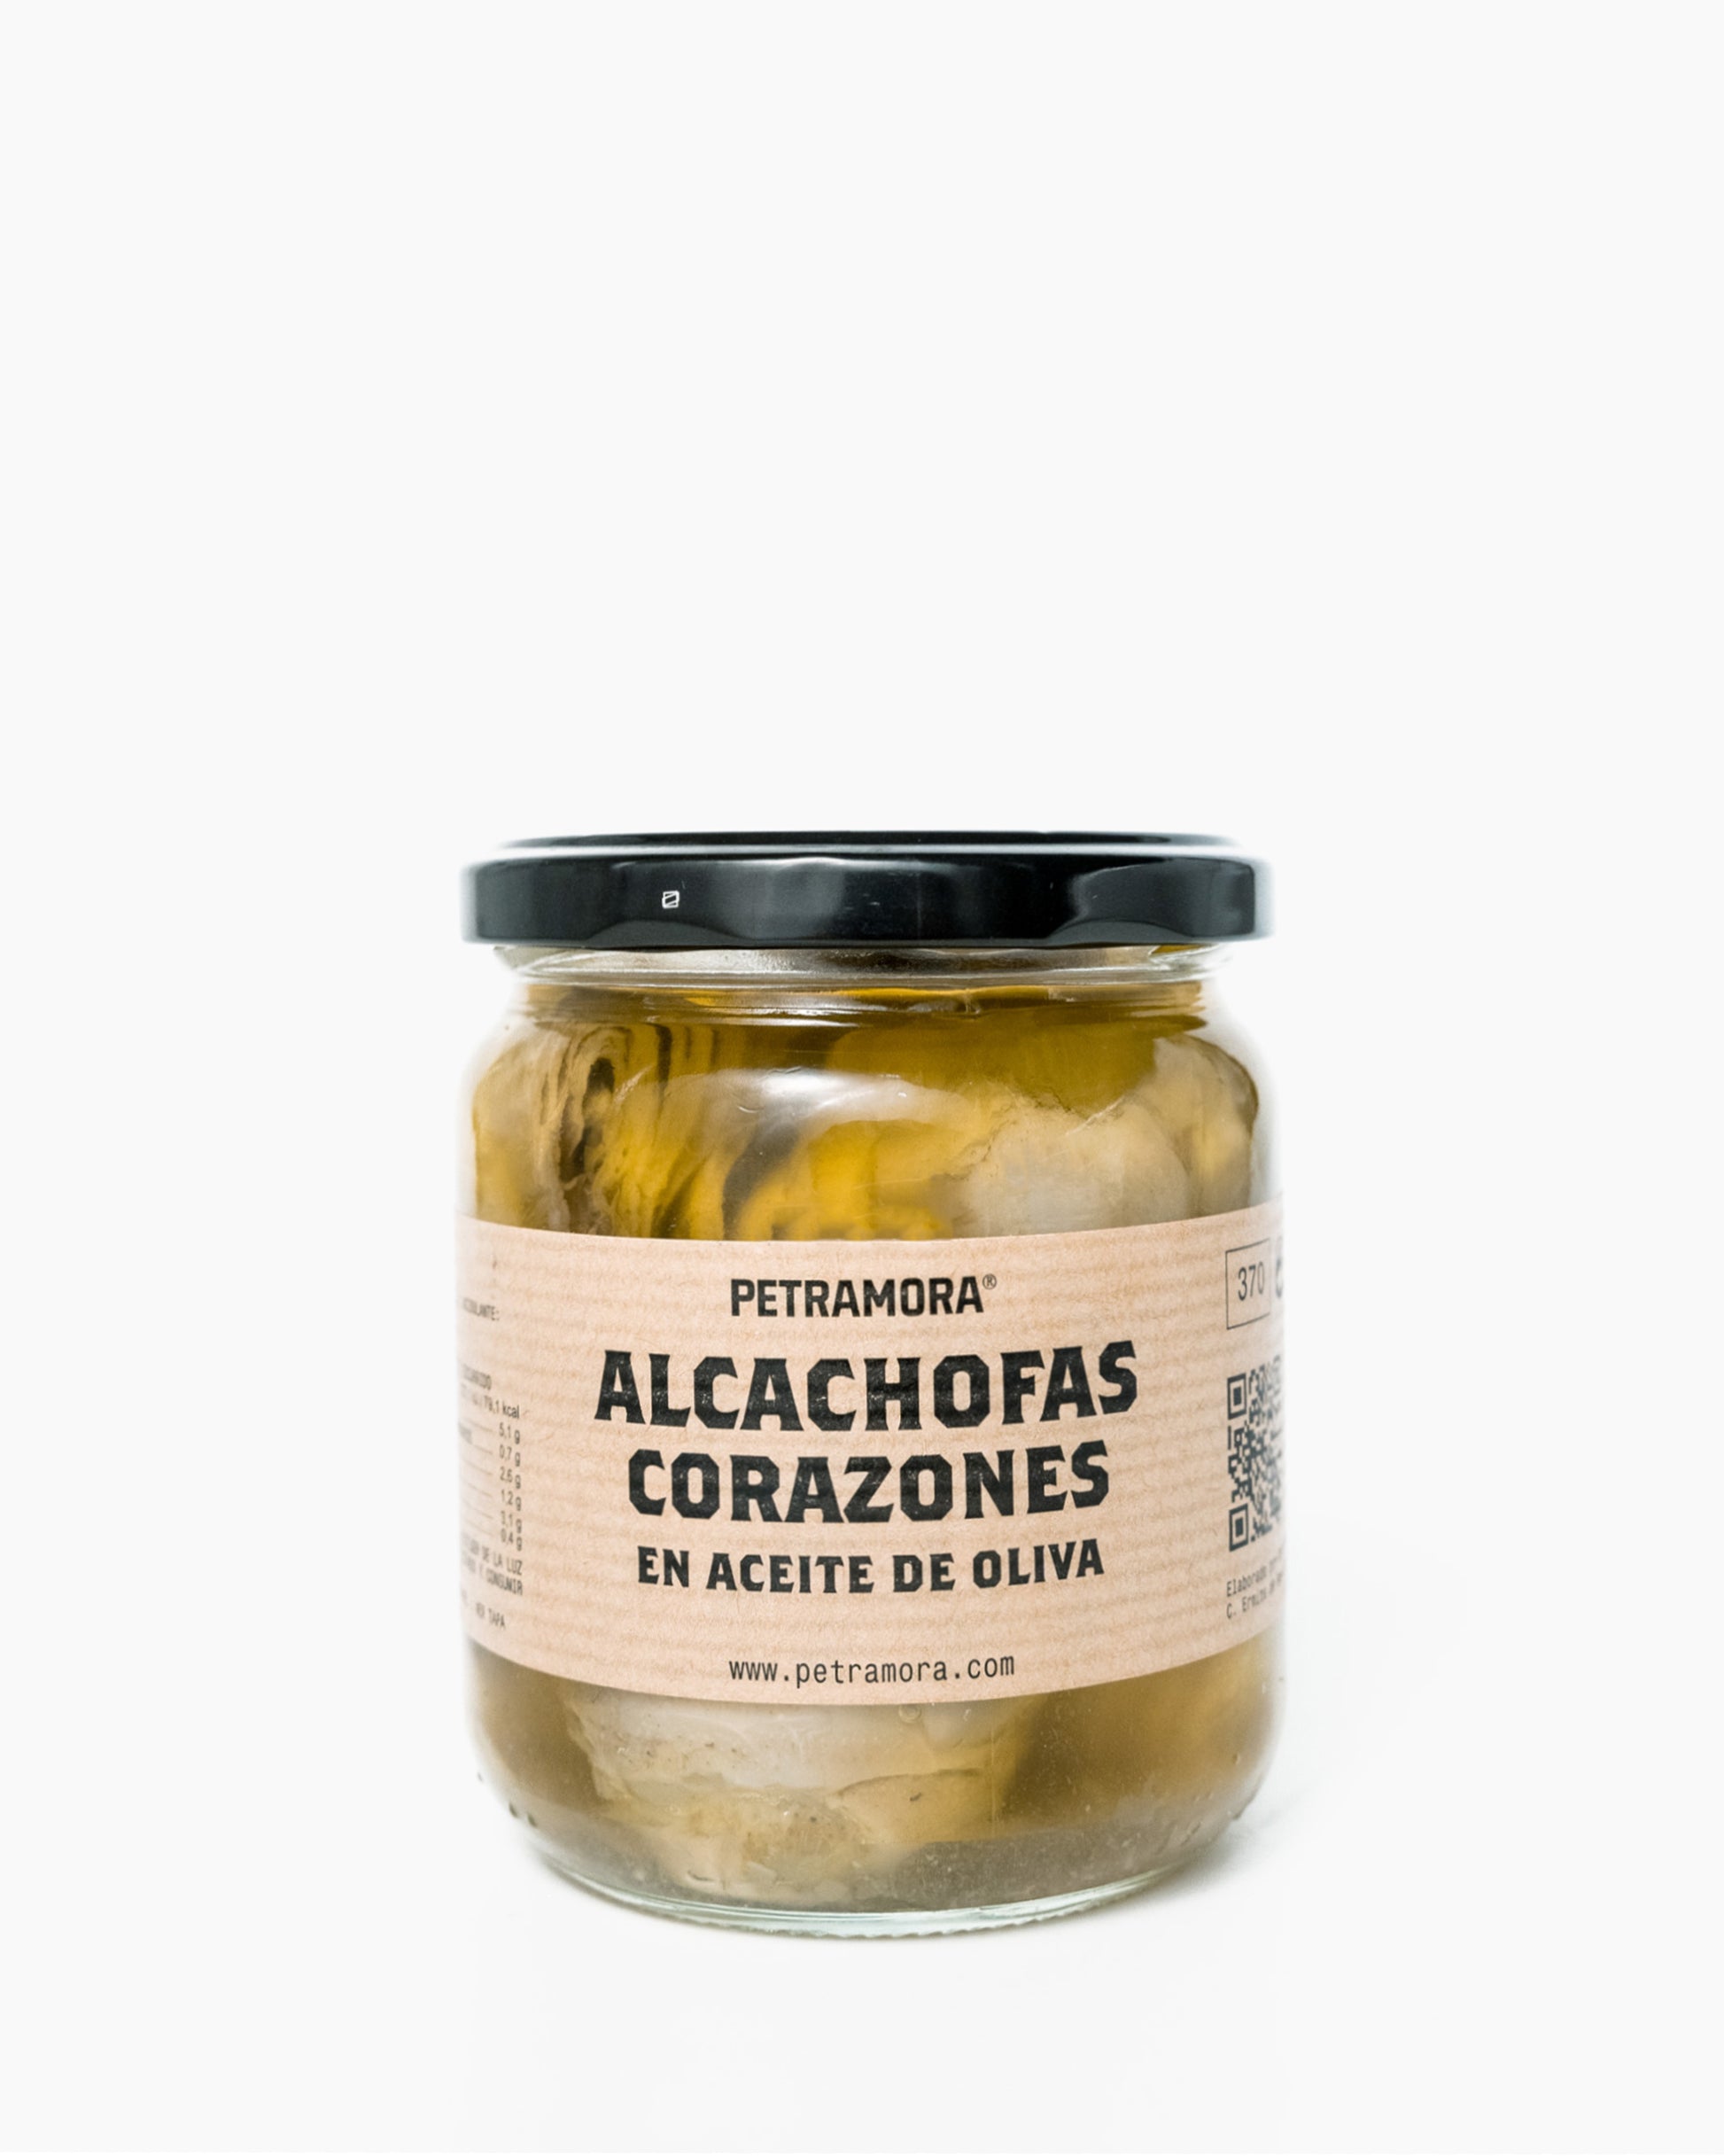 Corazones de Alcachofa en aceite de oliva 330 g